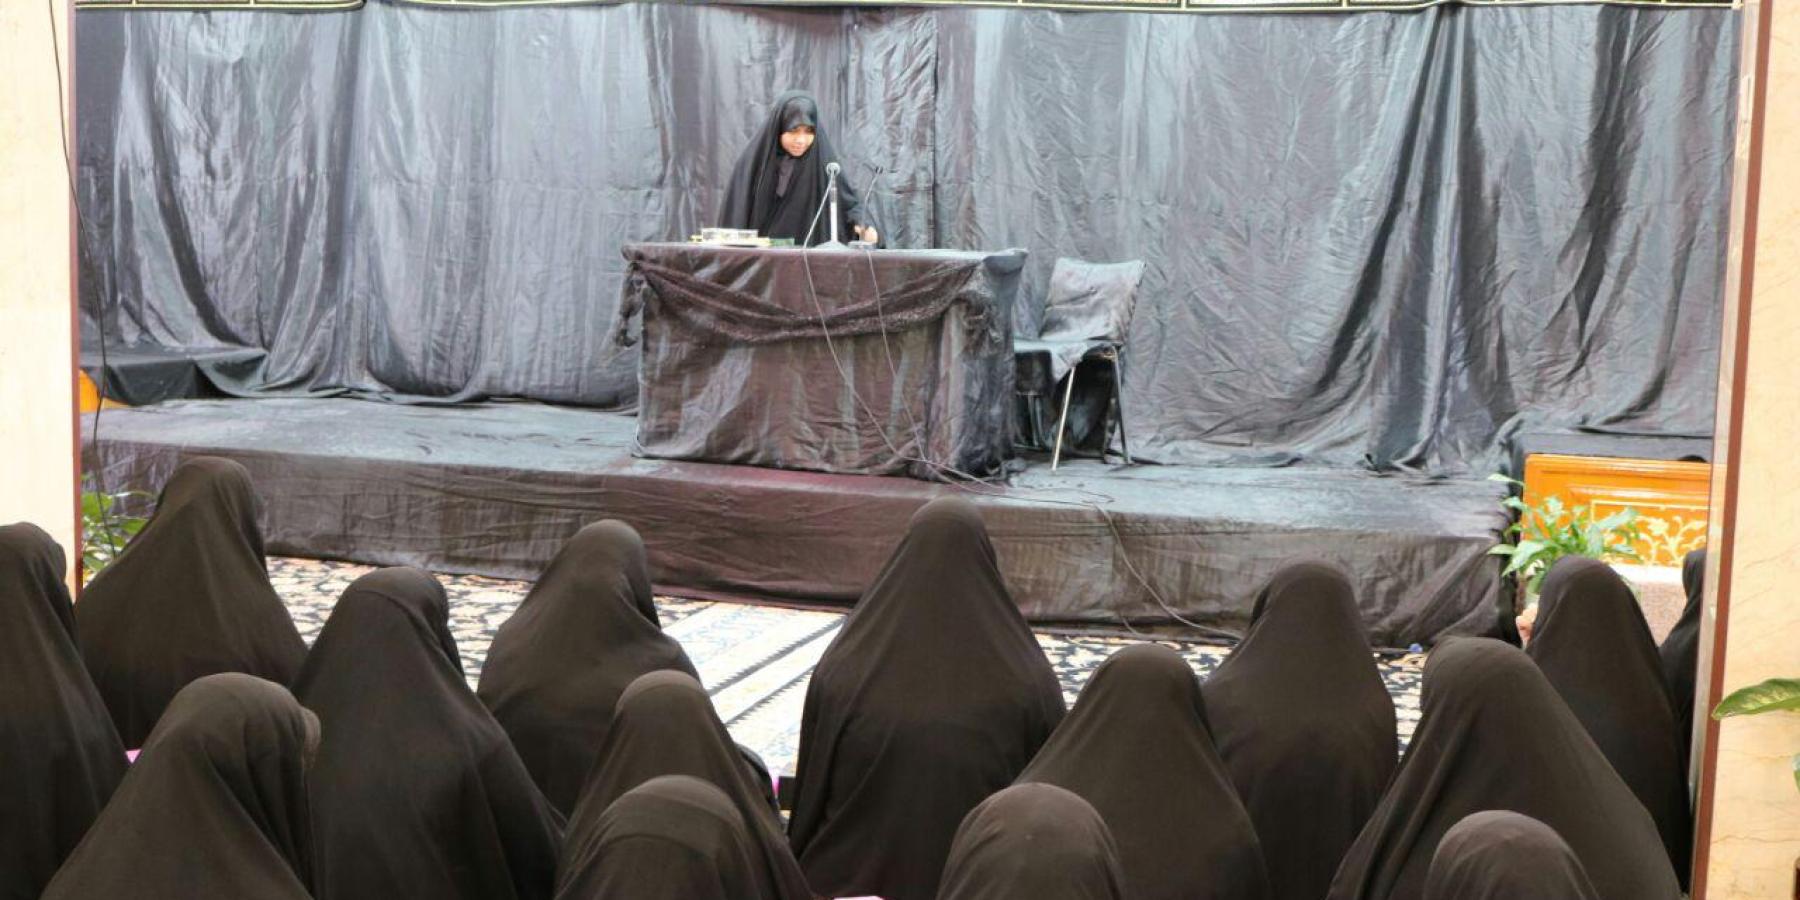 قسم الشؤون الدينية والفكرية النسوي يقيم مجالس العزاء في ذكرى وفاة عقيلة بني هاشم السيدة زينب(ع)